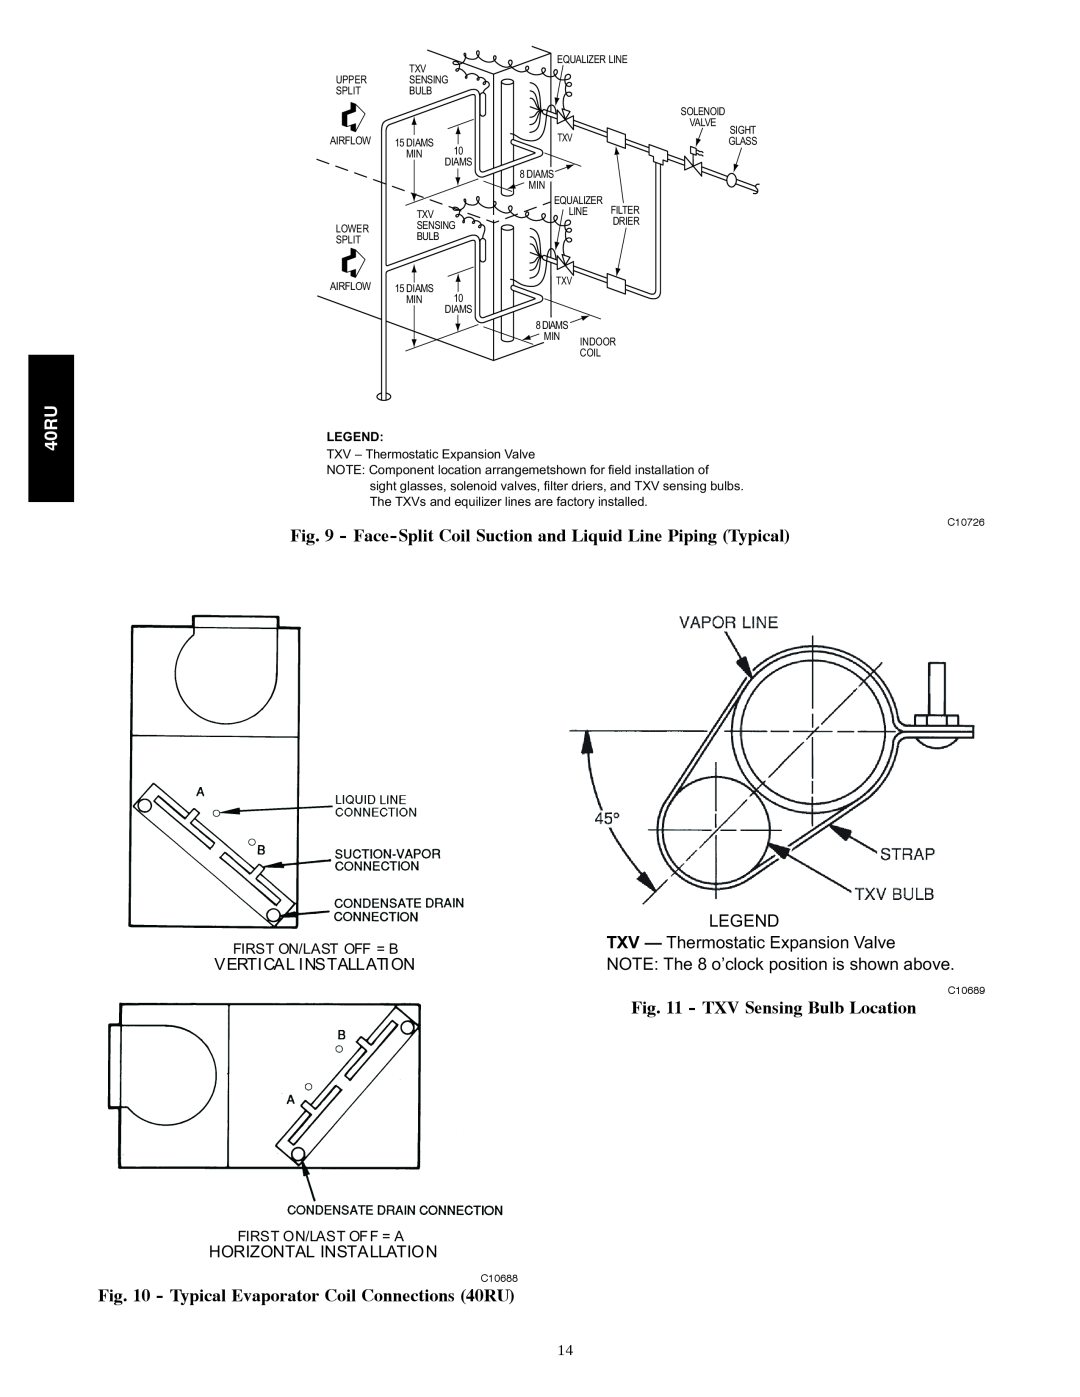 Carrier 40RU manual TXV Sensing Bulb Location, Vertical Installation, Horizontal Installation 